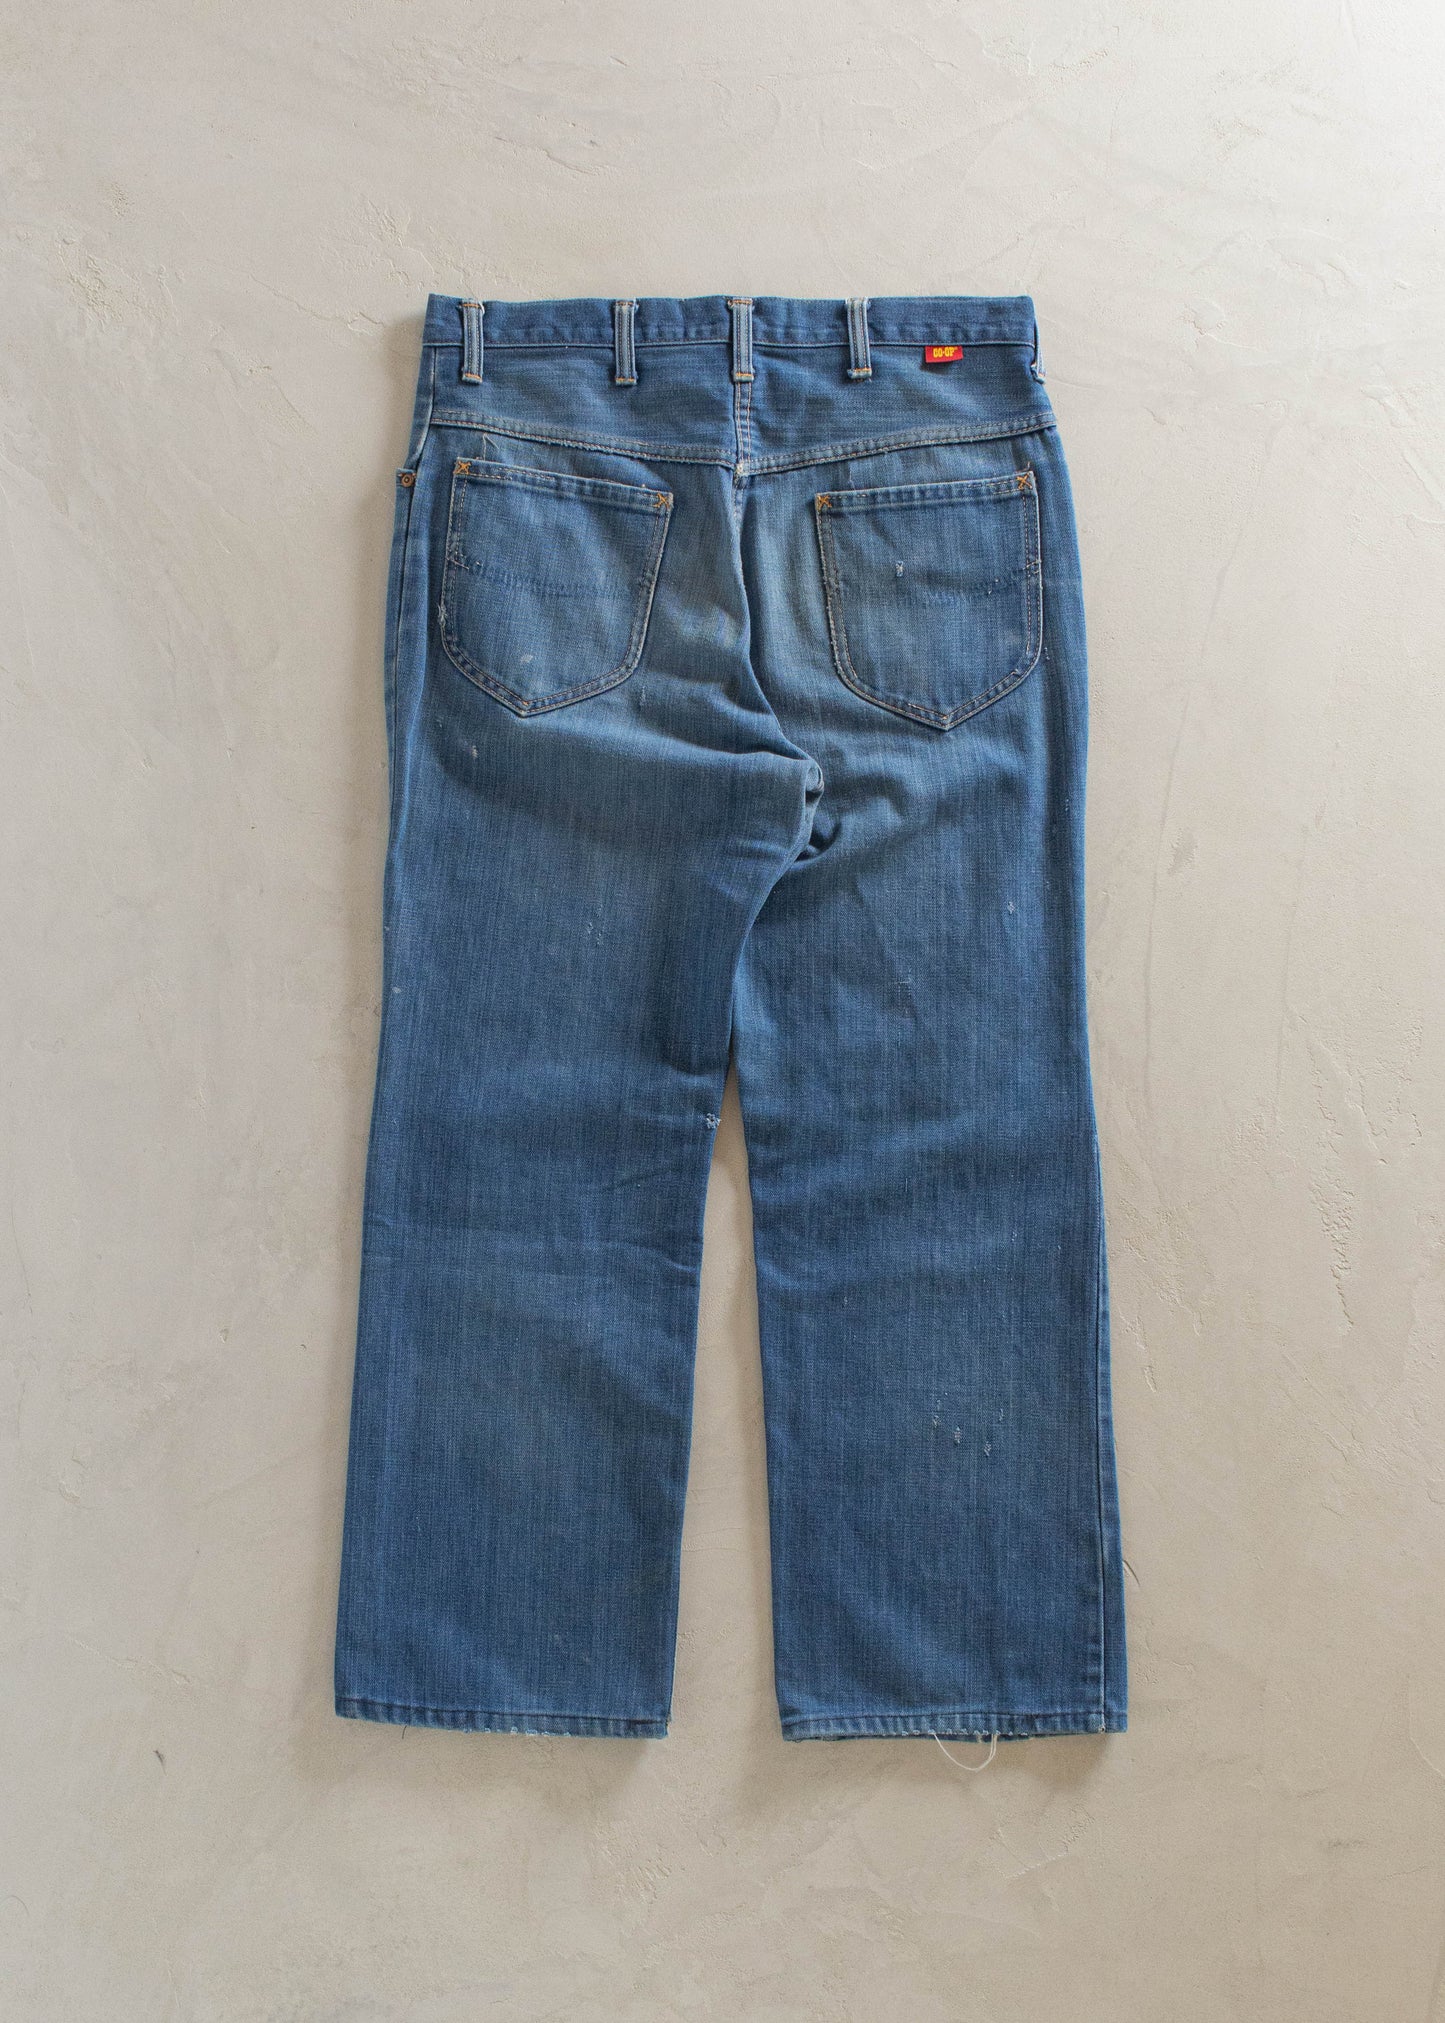 1980s Coop Midwash Jeans Size Women's 30 Men's 32